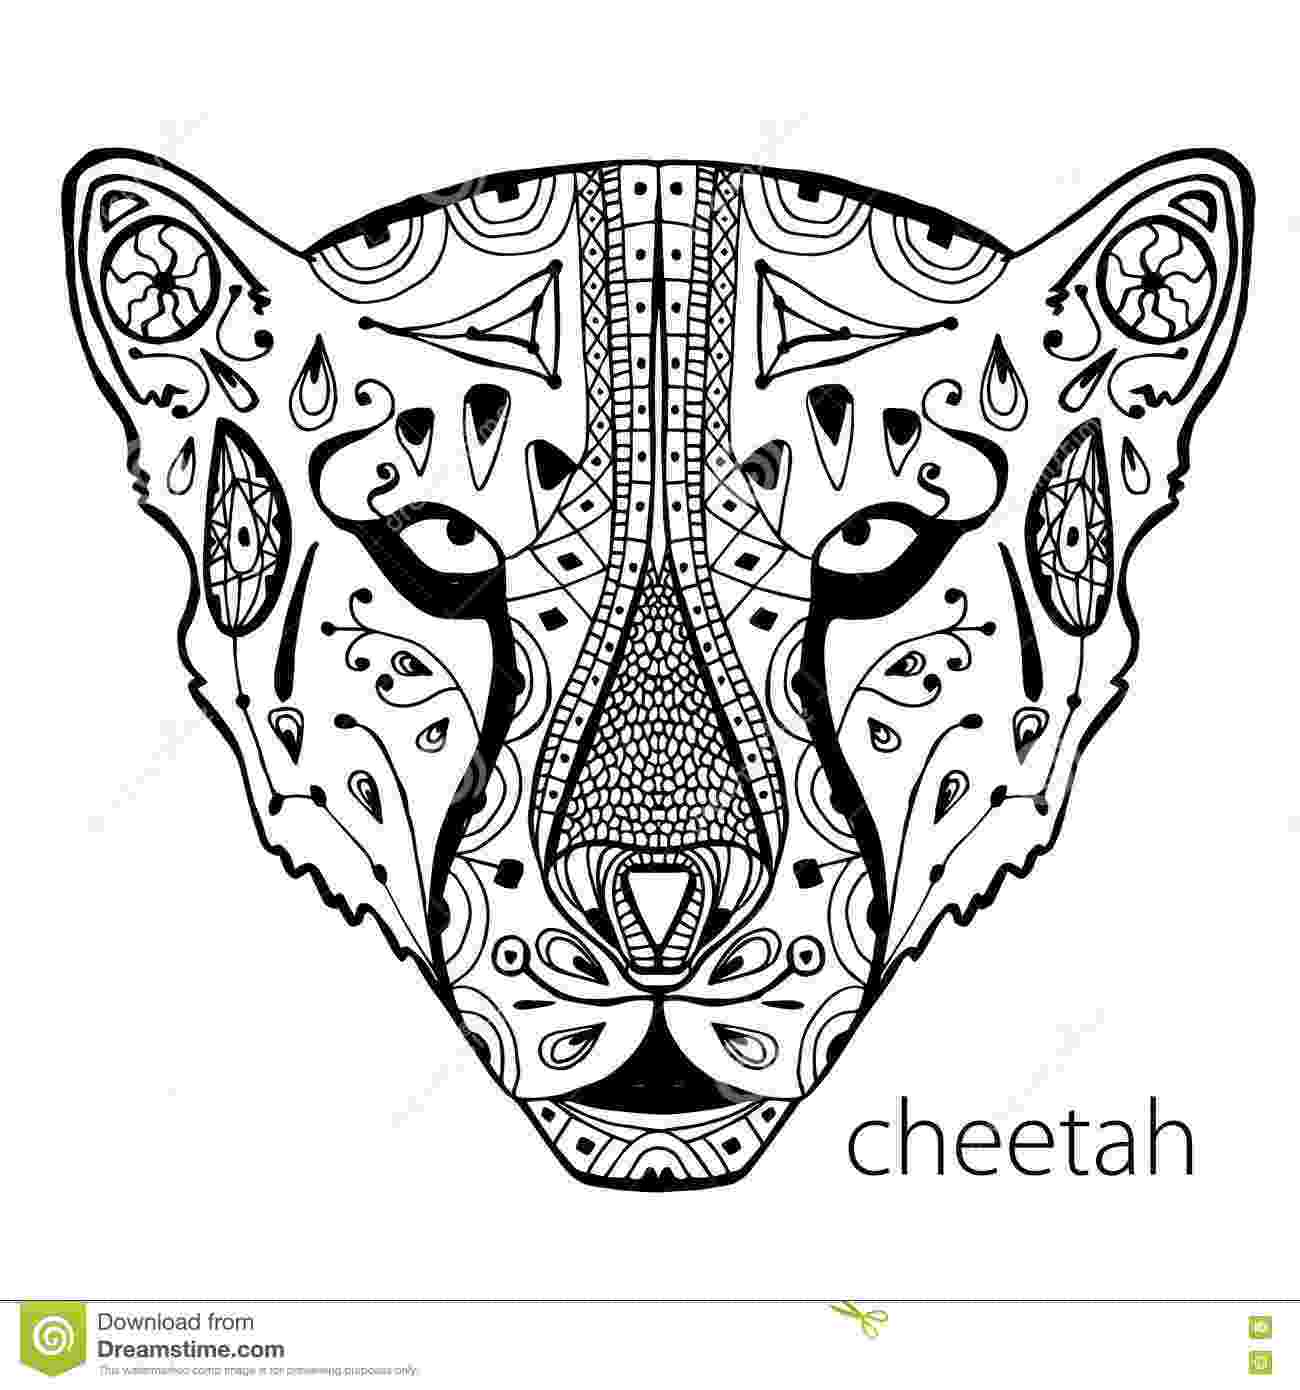 cheetah coloring pages for adults cheetah coloring pages 360coloringpages adults coloring pages for cheetah 